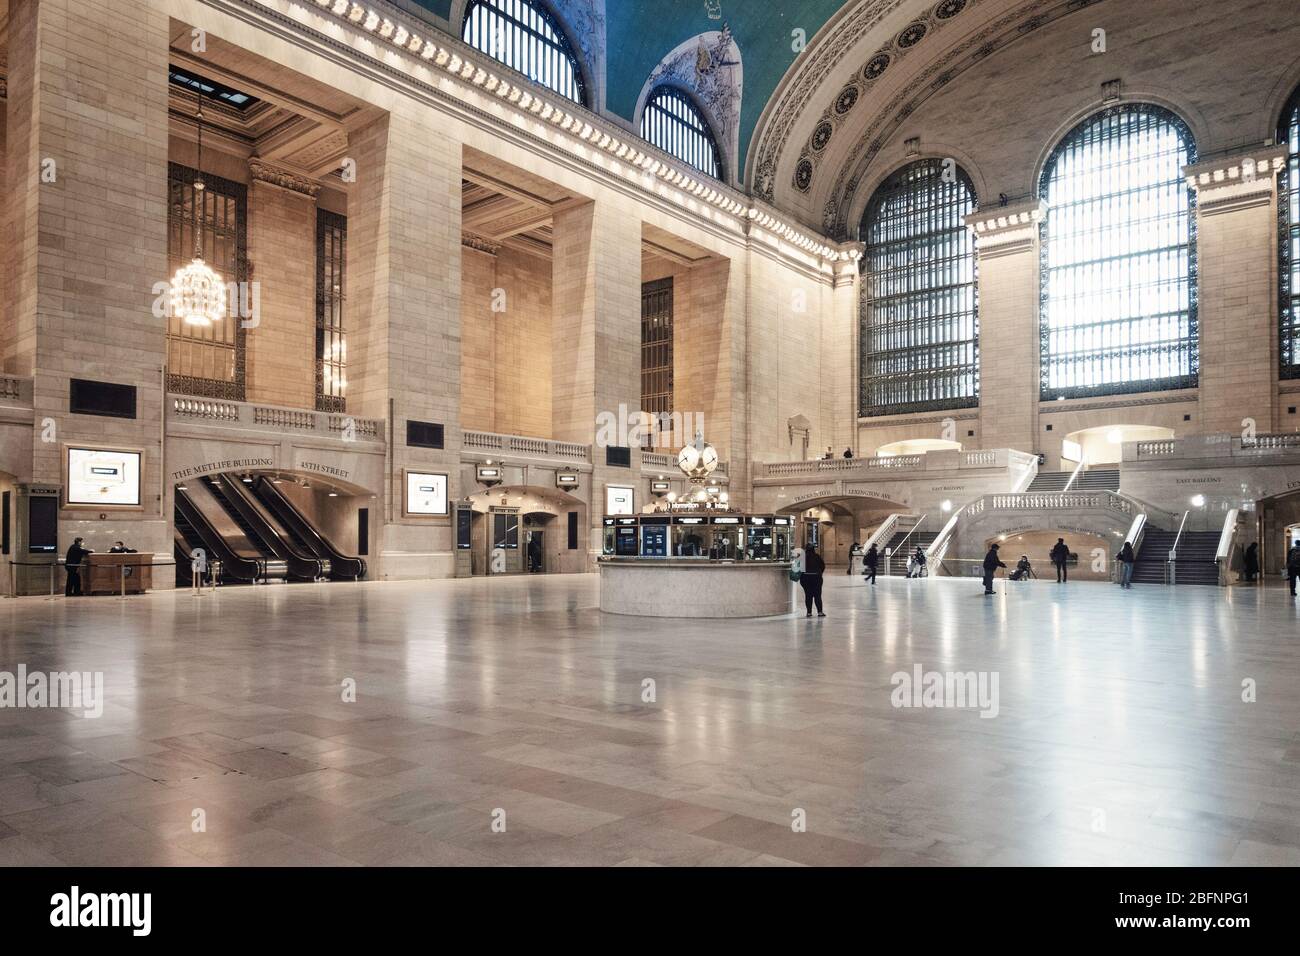 Le Grand Central est presque vide en raison de la pandémie COVID-19, avril 2020, New York City, États-Unis Banque D'Images